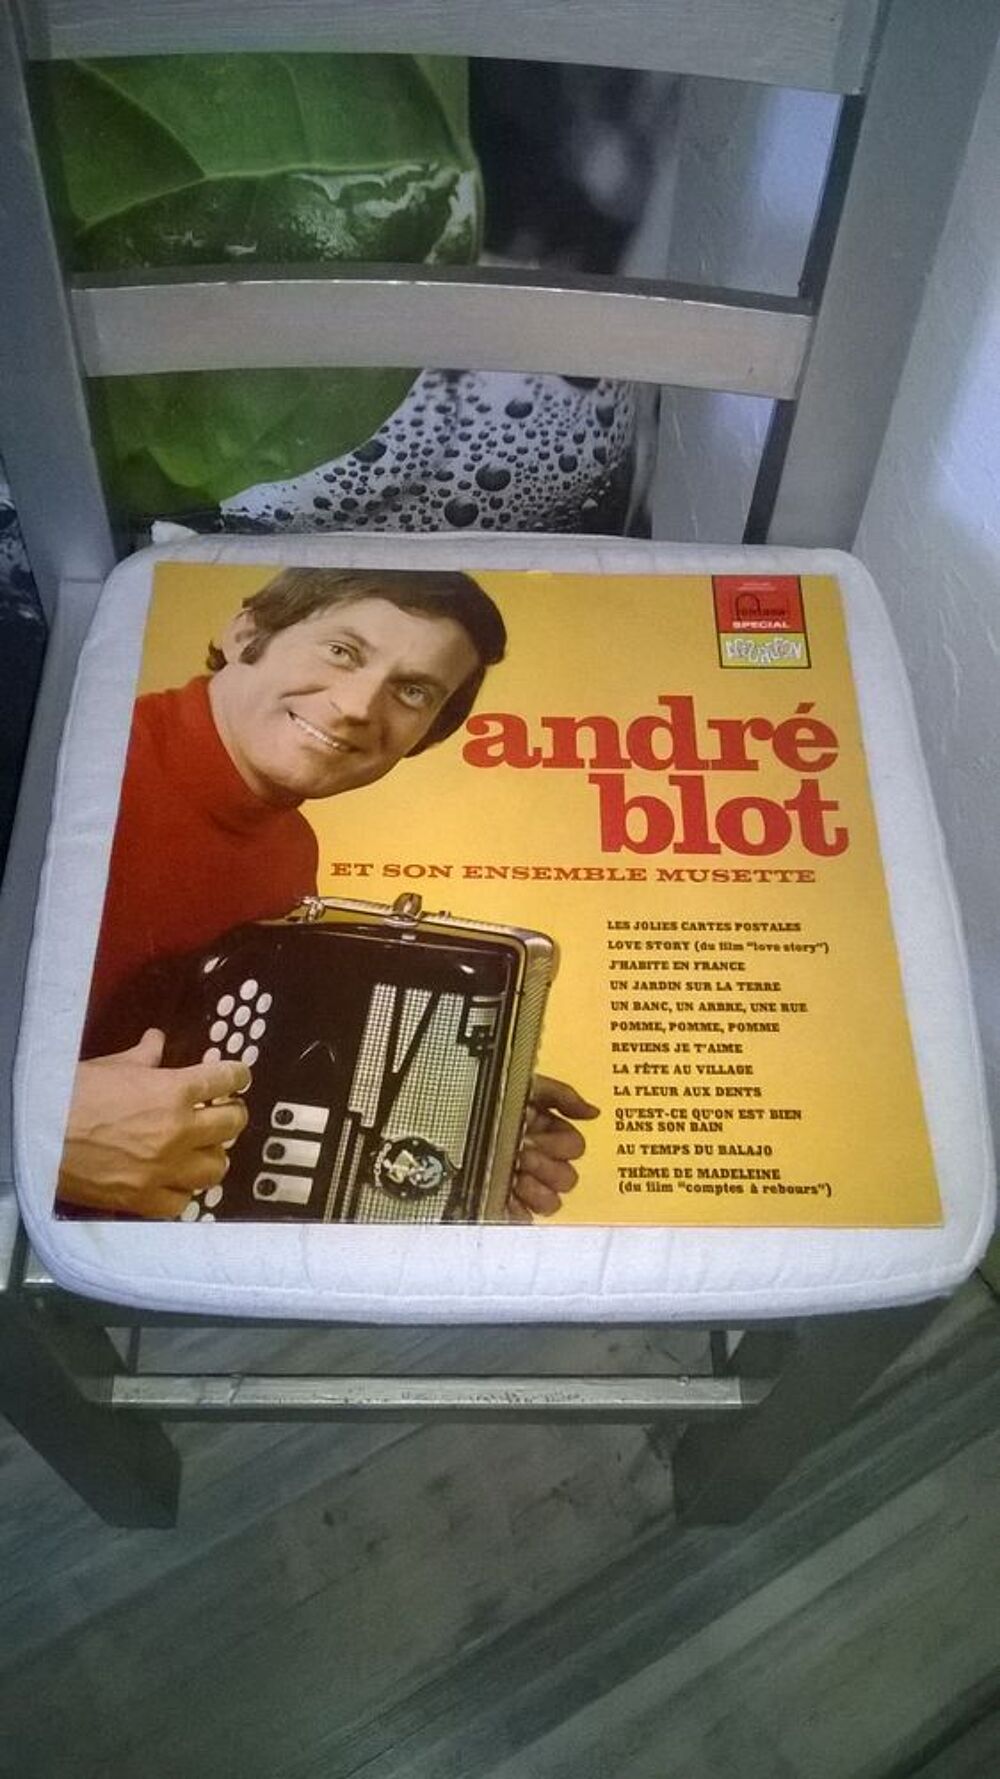 Vinyle Andre Blot
Et son ensemble musette
1971
Excellent CD et vinyles